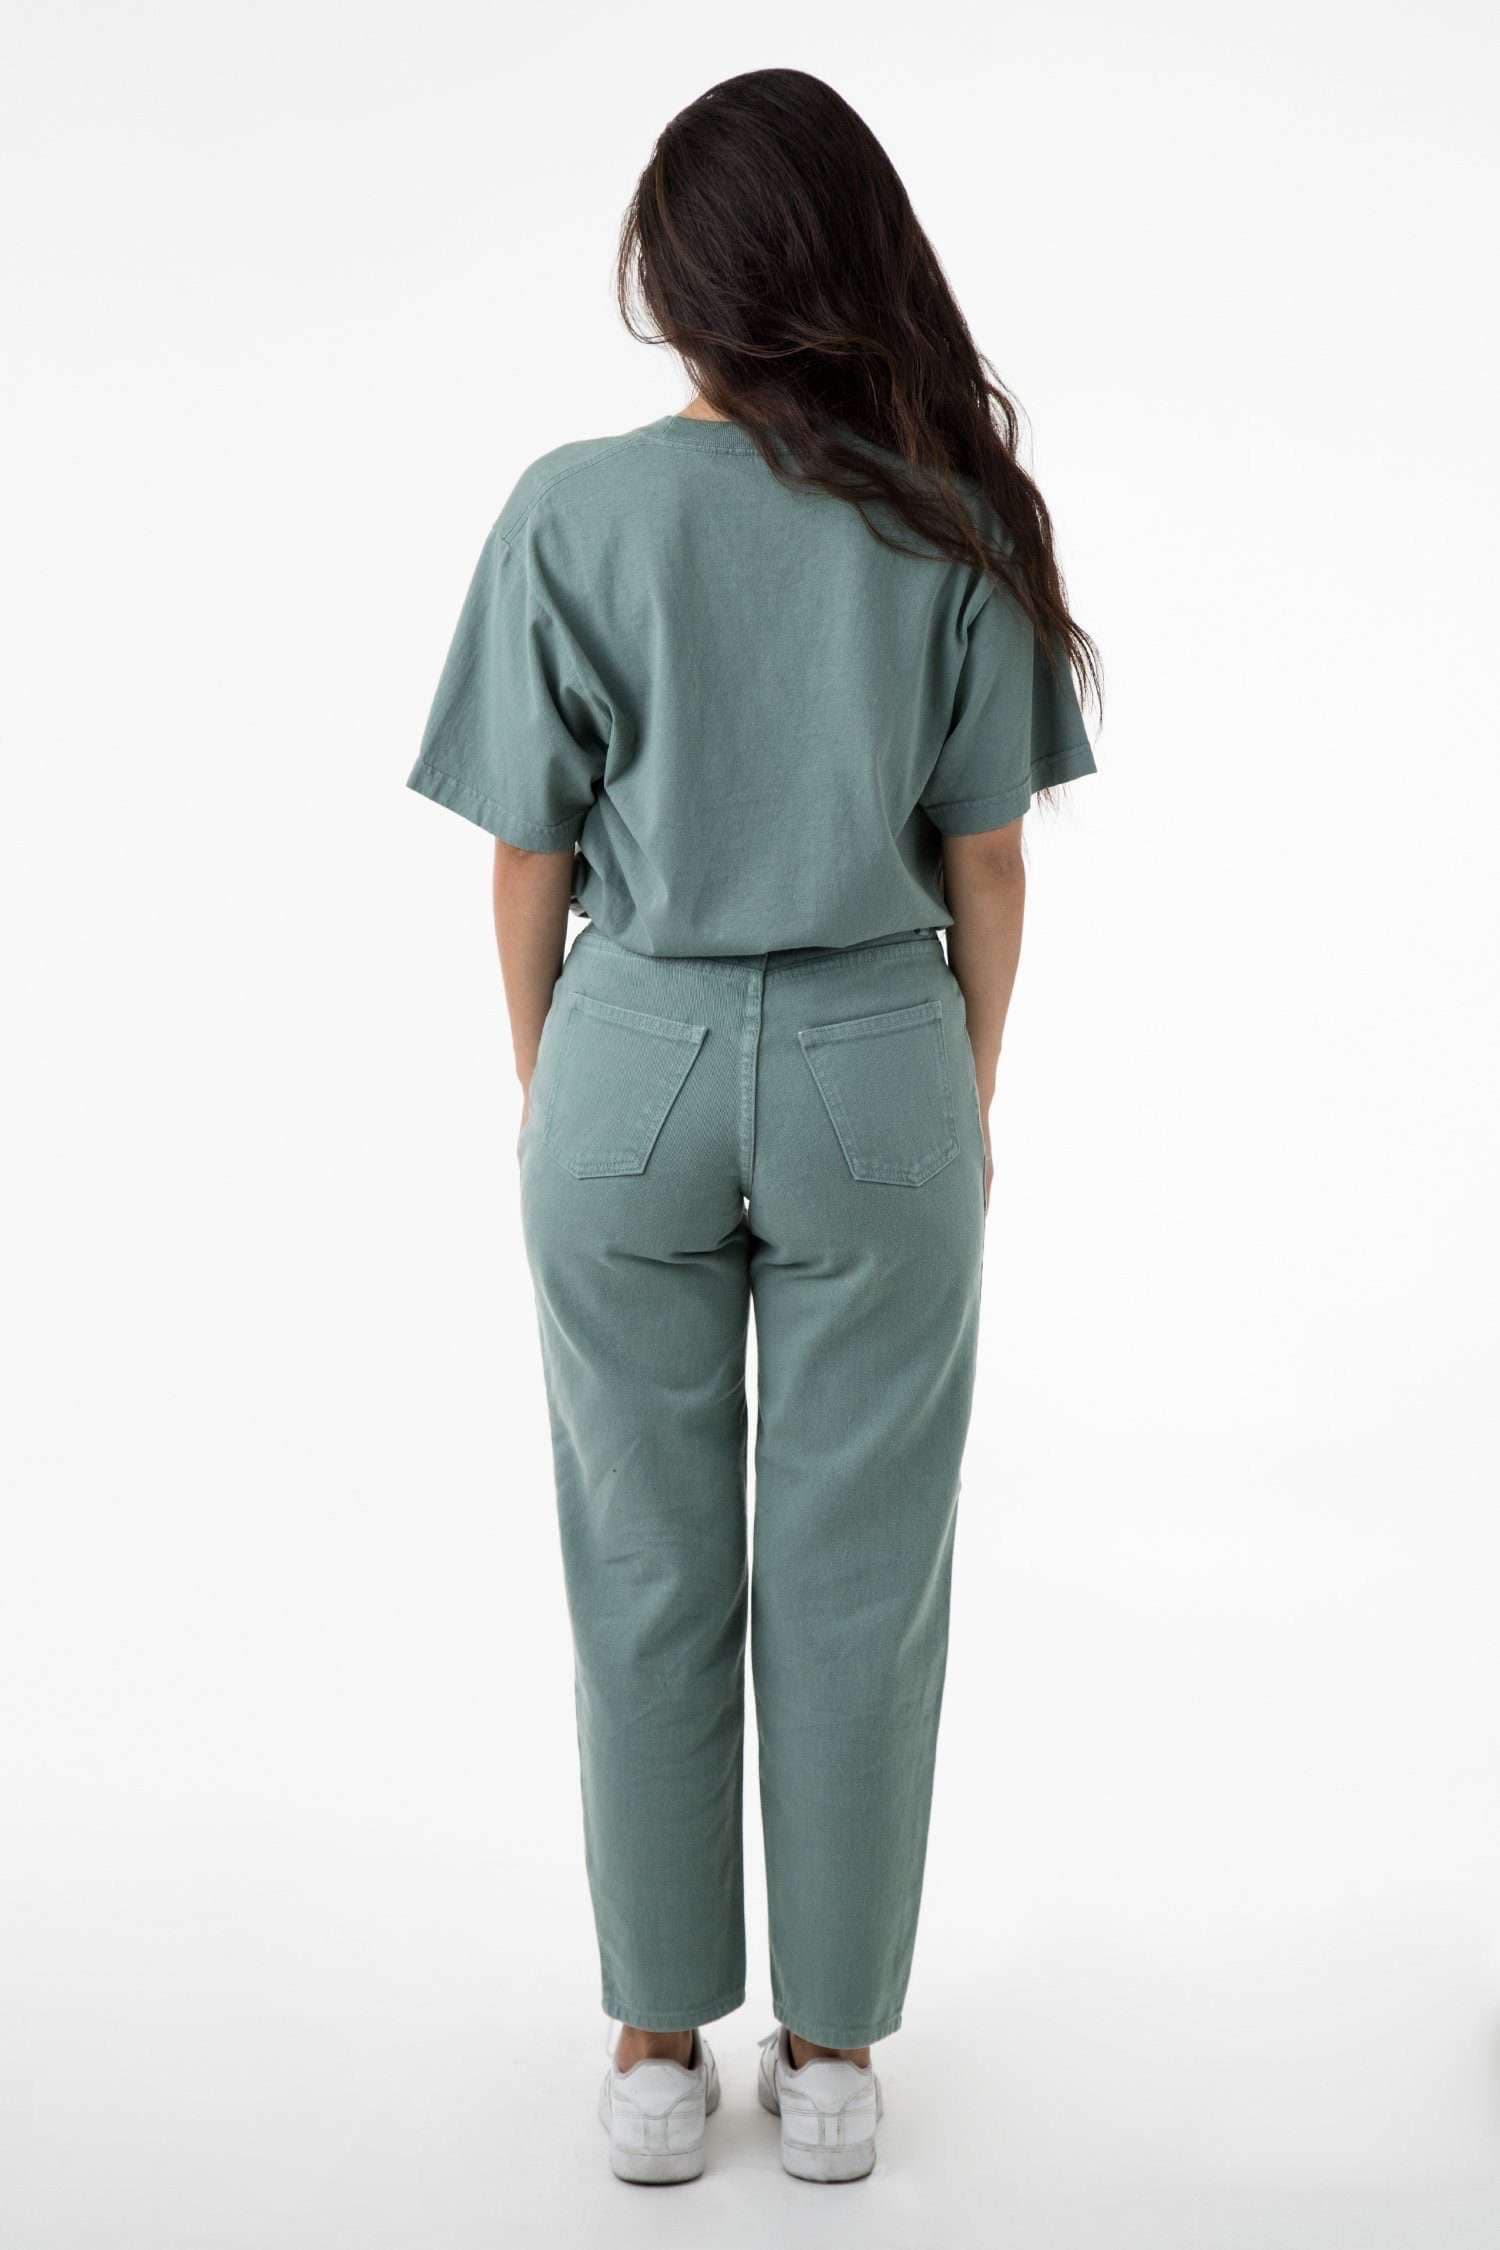 RBDW01GD - Garment Dye Women's Relaxed Fit Bull Denim Jean Jeans Los Angeles Apparel 